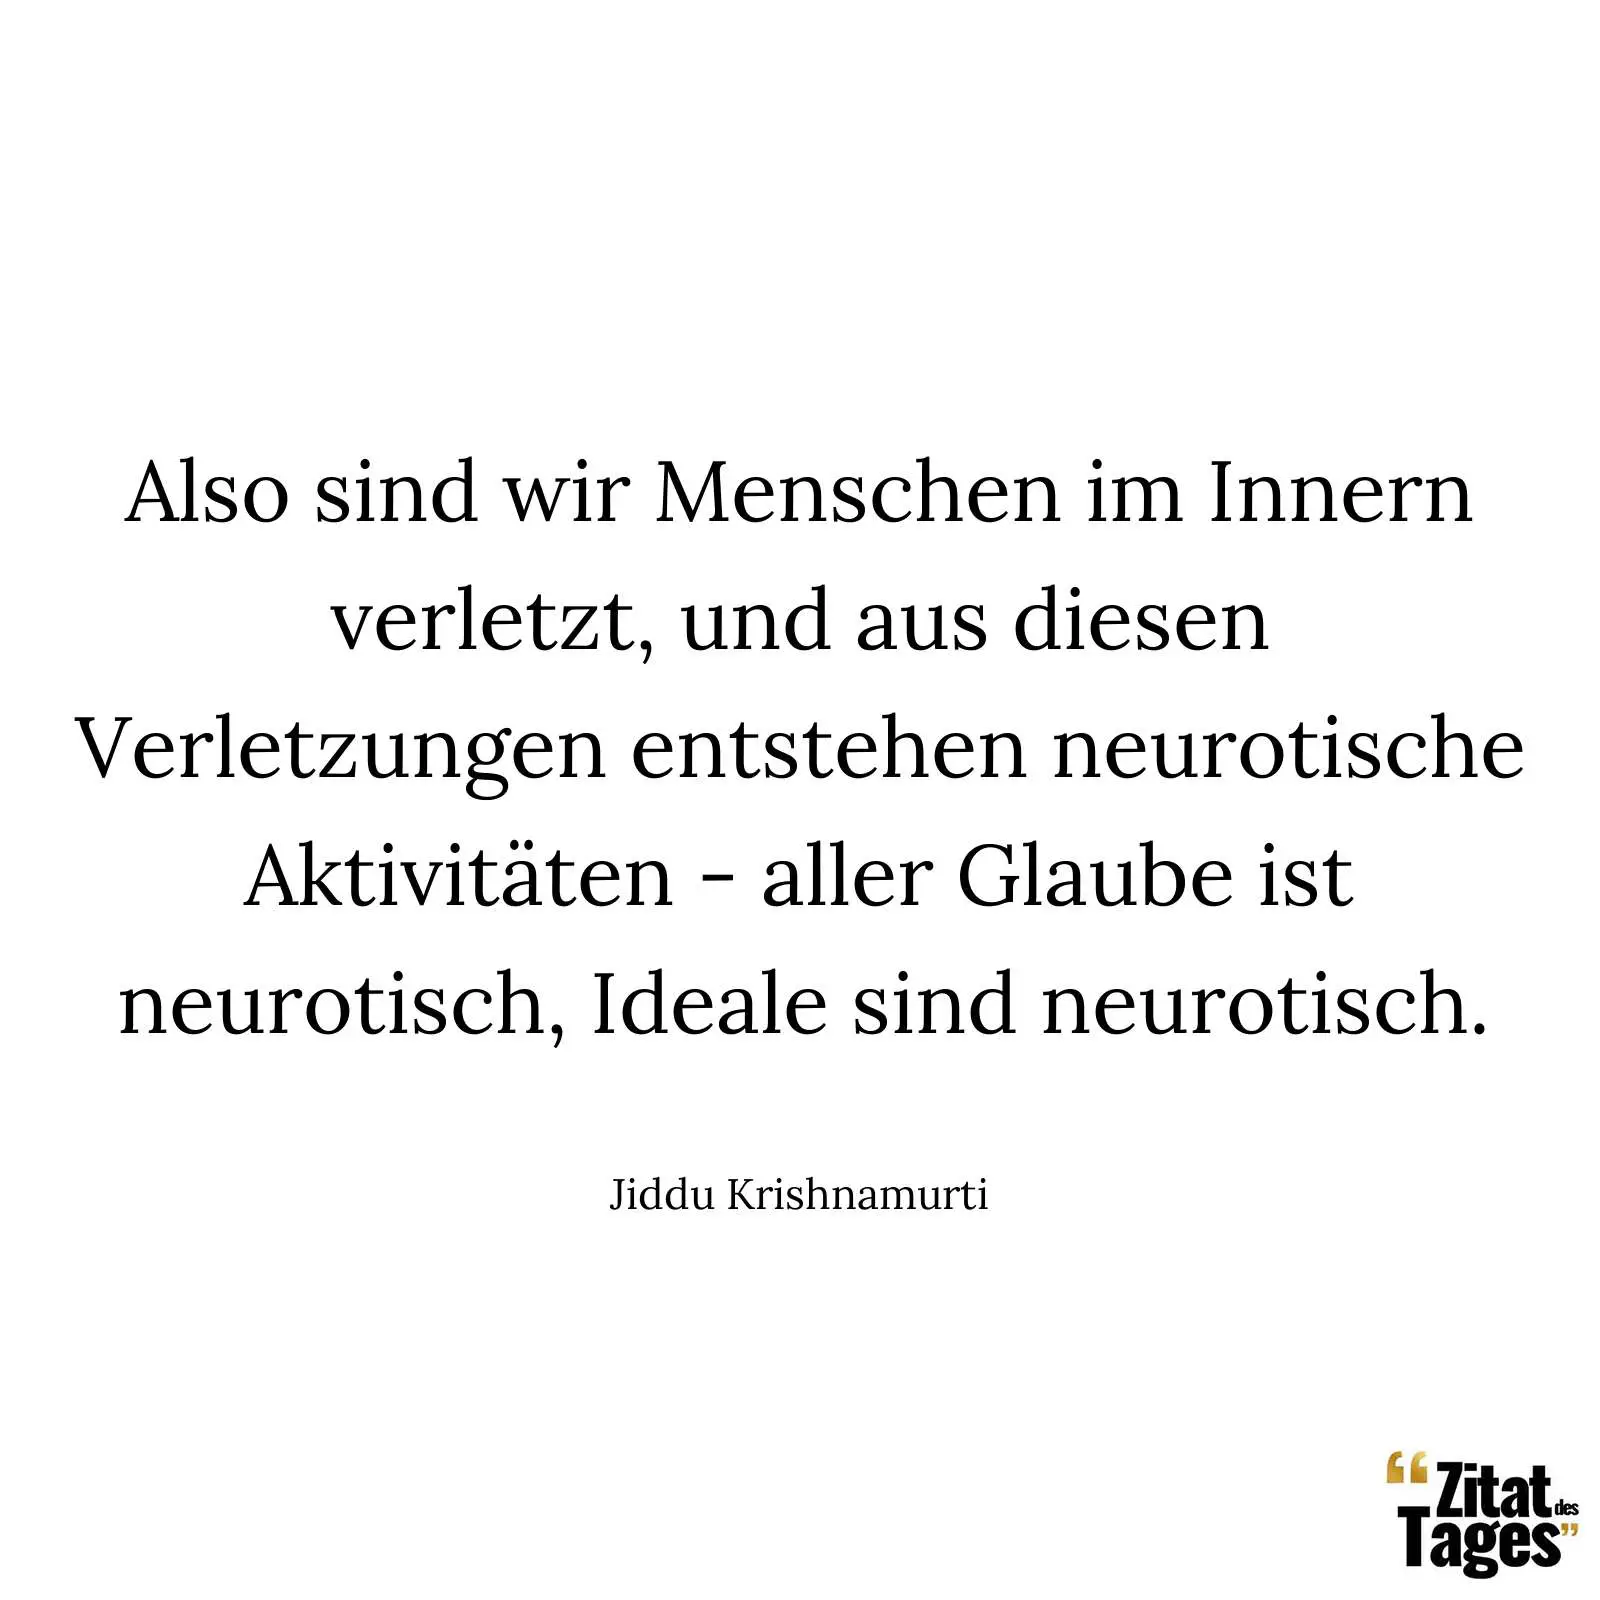 Also sind wir Menschen im Innern verletzt, und aus diesen Verletzungen entstehen neurotische Aktivitäten - aller Glaube ist neurotisch, Ideale sind neurotisch. - Jiddu Krishnamurti